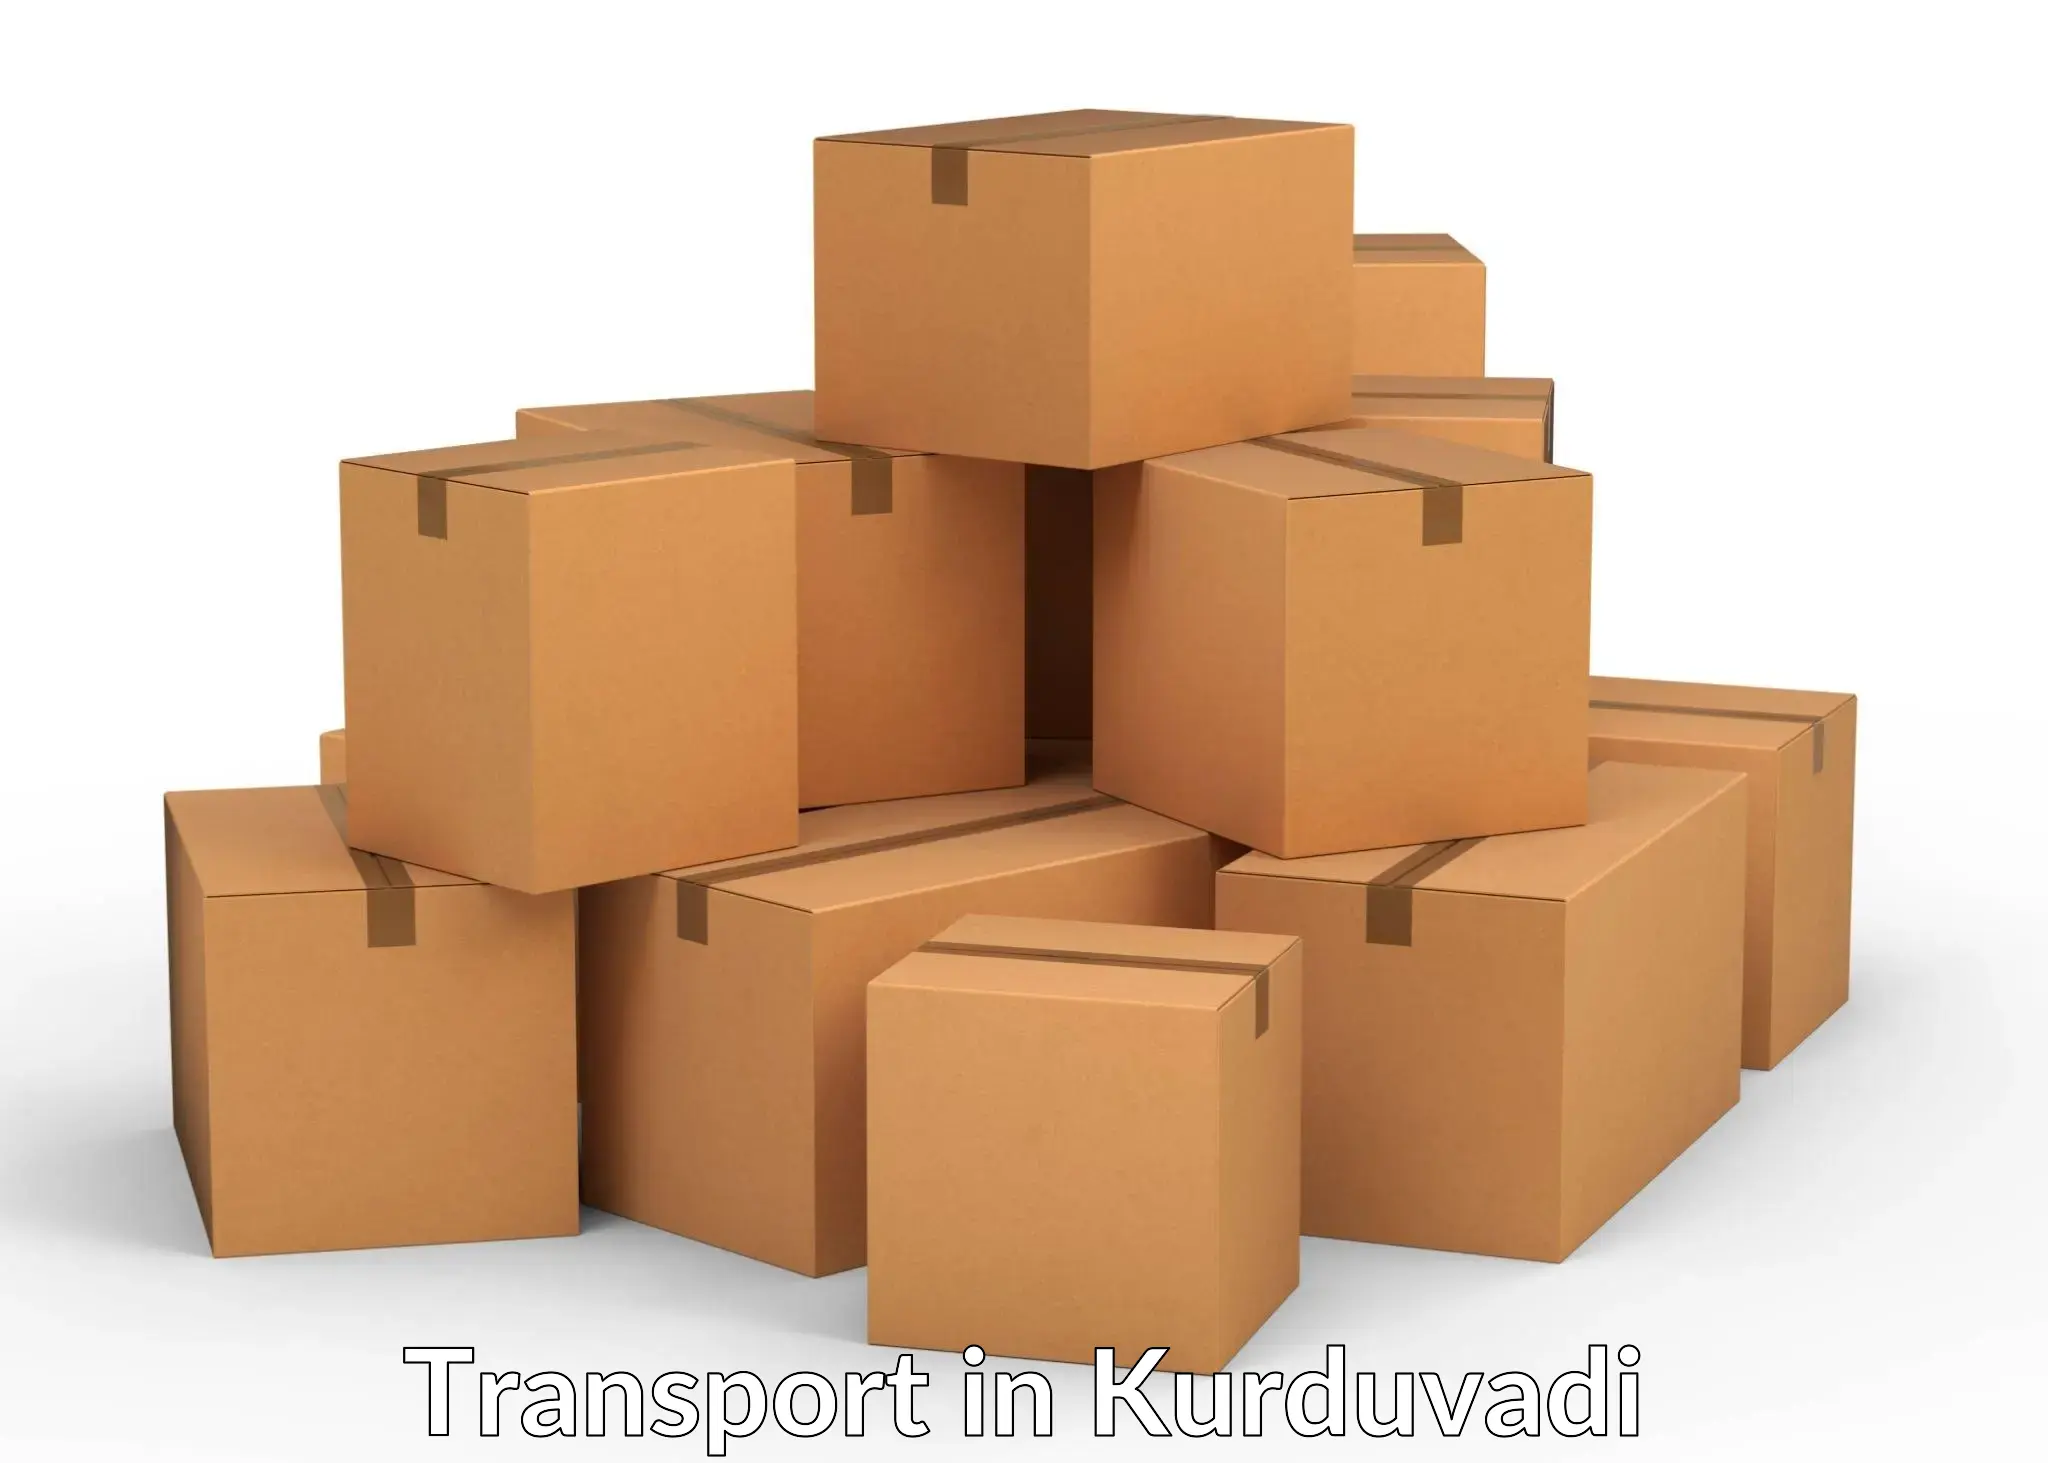 Container transport service in Kurduvadi